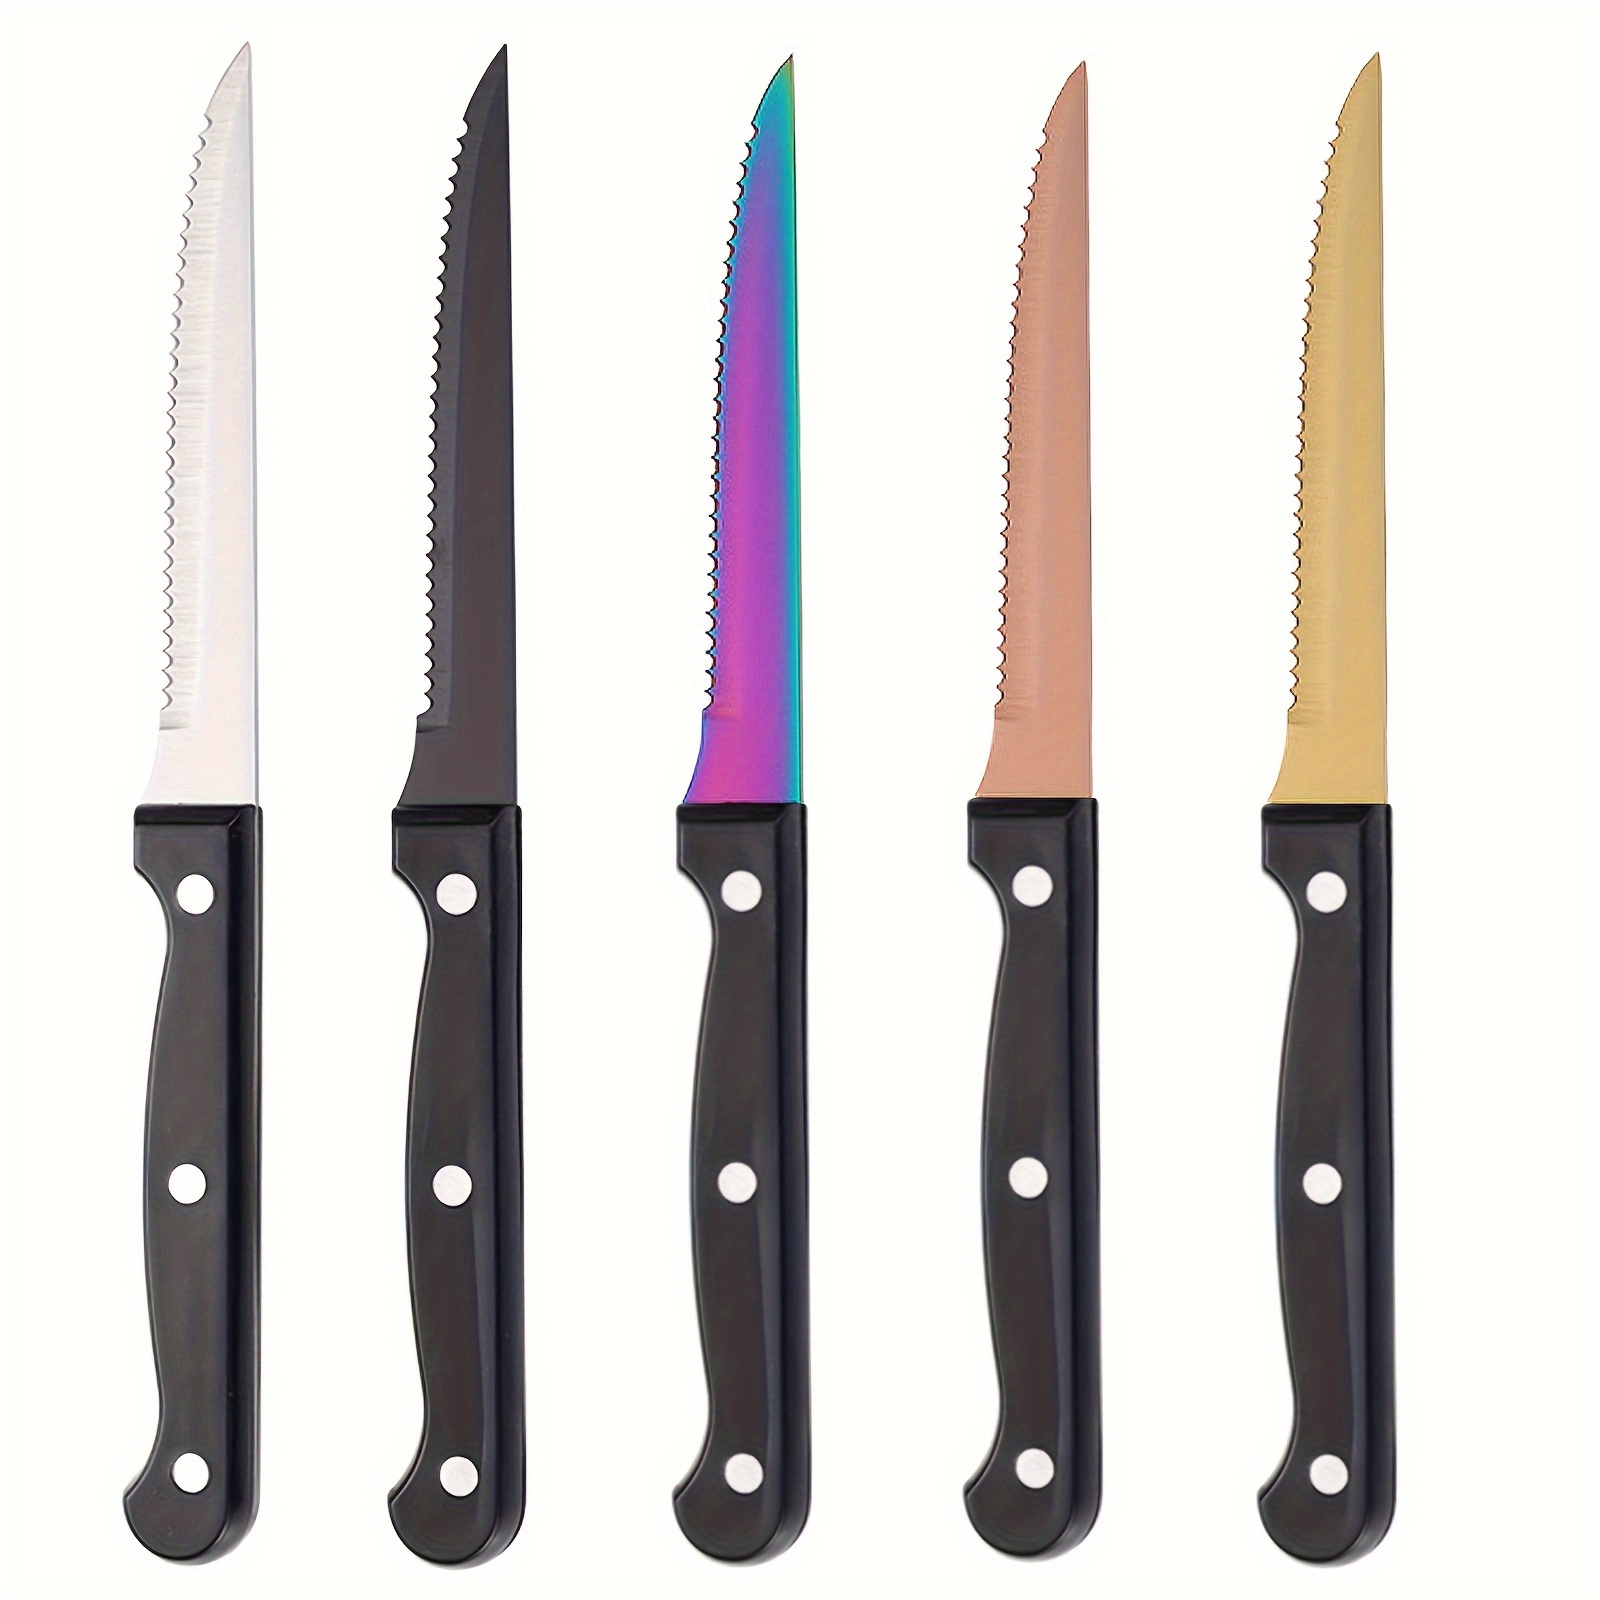 Steak Knives Premium Stainless Steel Steak Knives Set - Temu